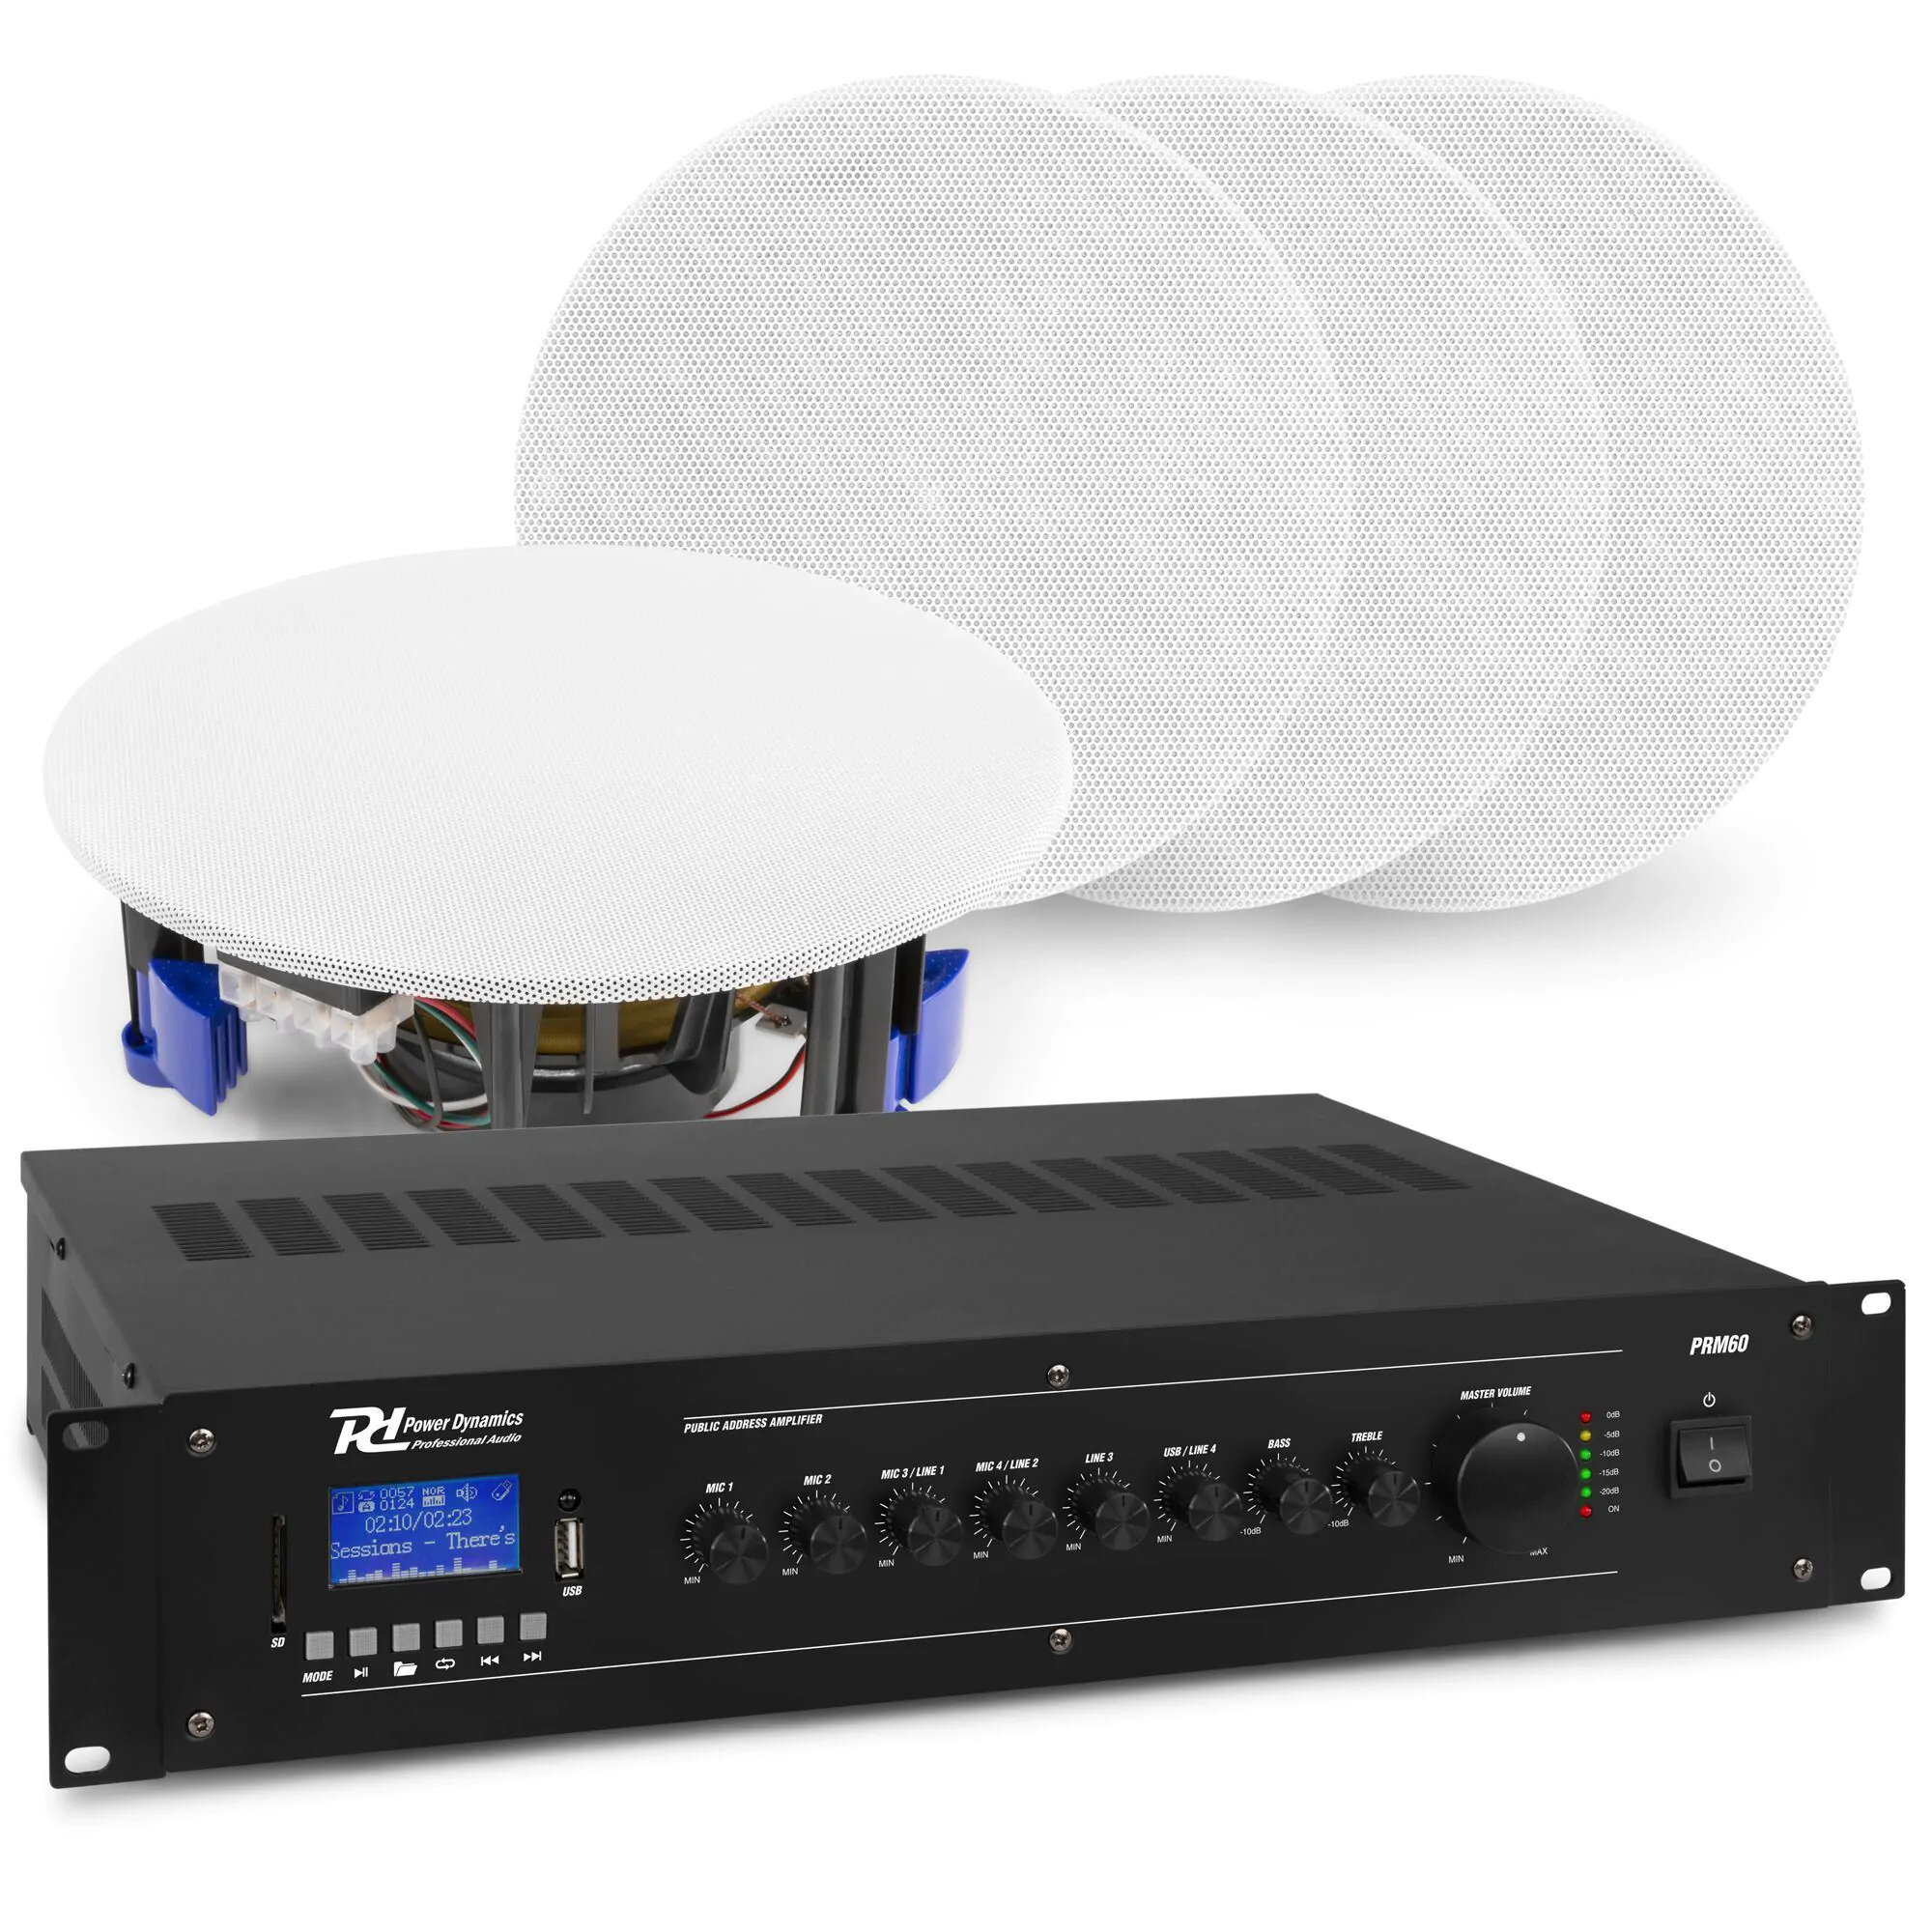 Power Dynamics Ljudsystem med 4x NCSP5 inbyggda högtalare och PRM60 förstärkare med Bluetooth